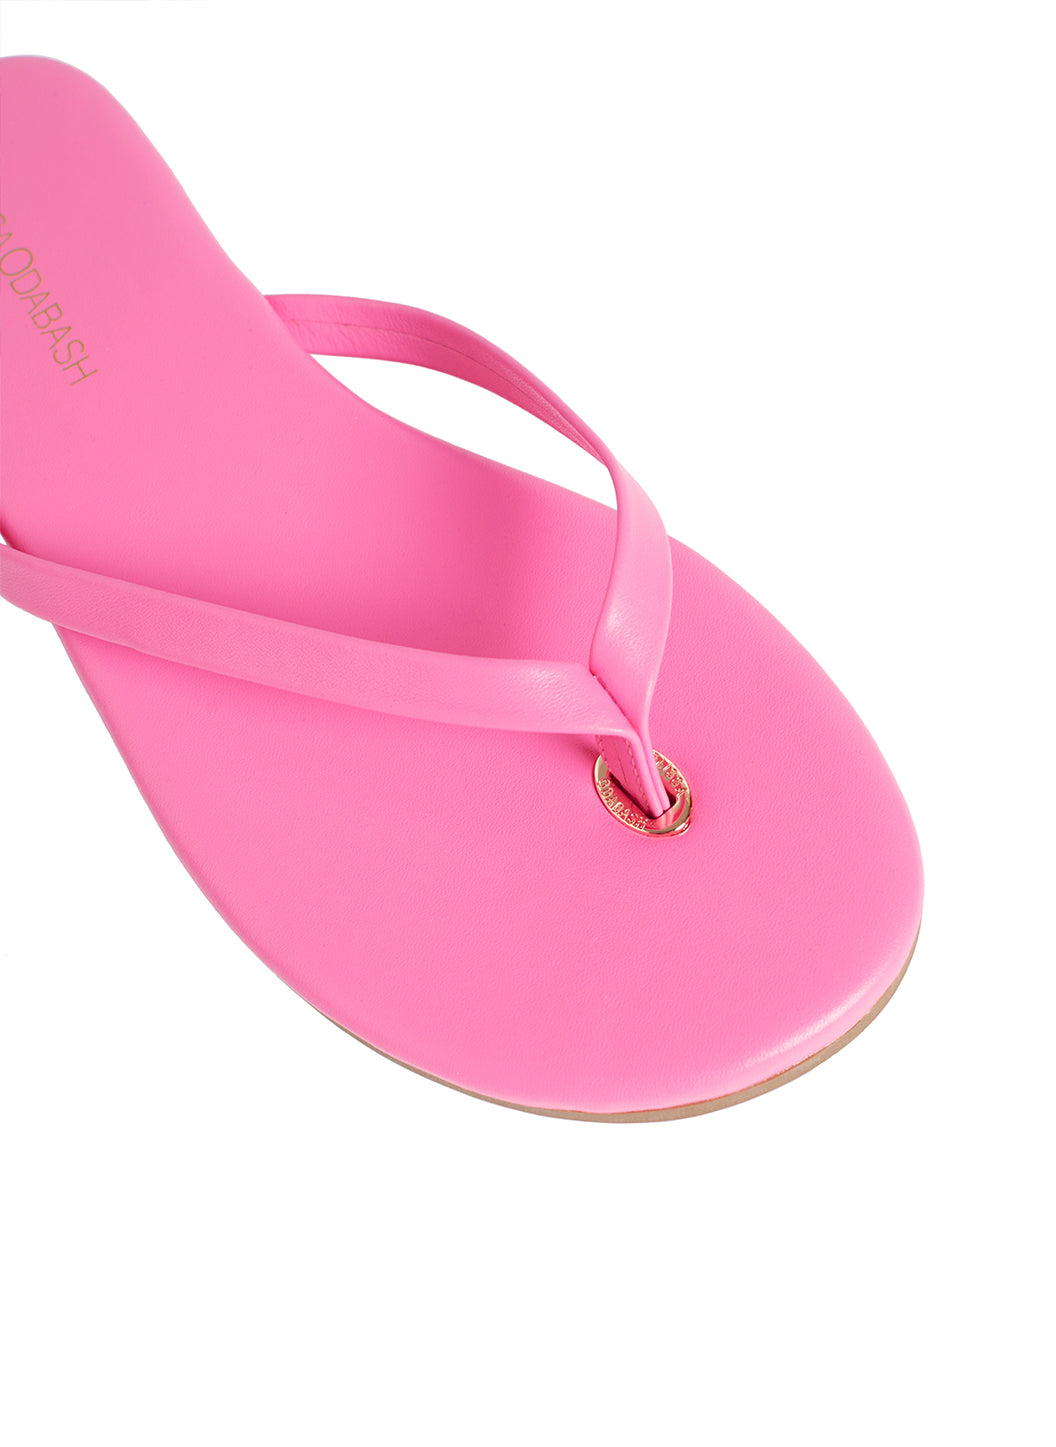 Melissa Odabash Leather Flip Flop Sandals Hot Pink - 2024 Collection